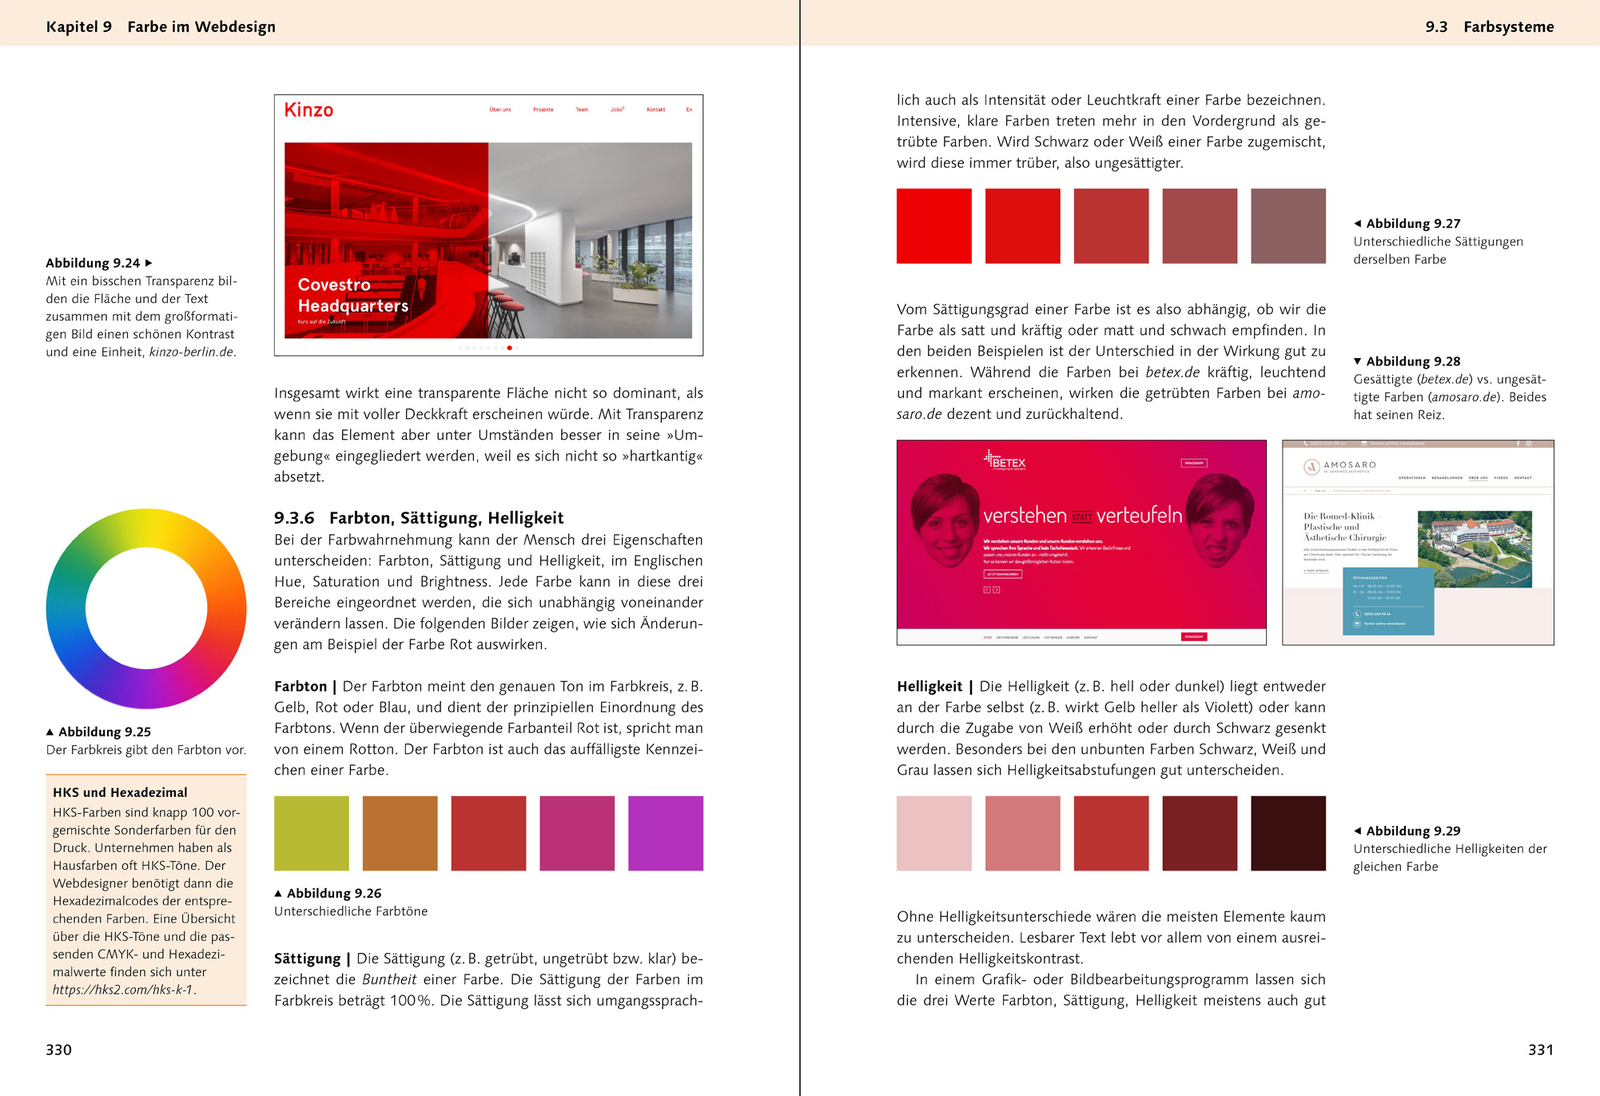 Webdesign - Das Handbuch (4. Auflage)